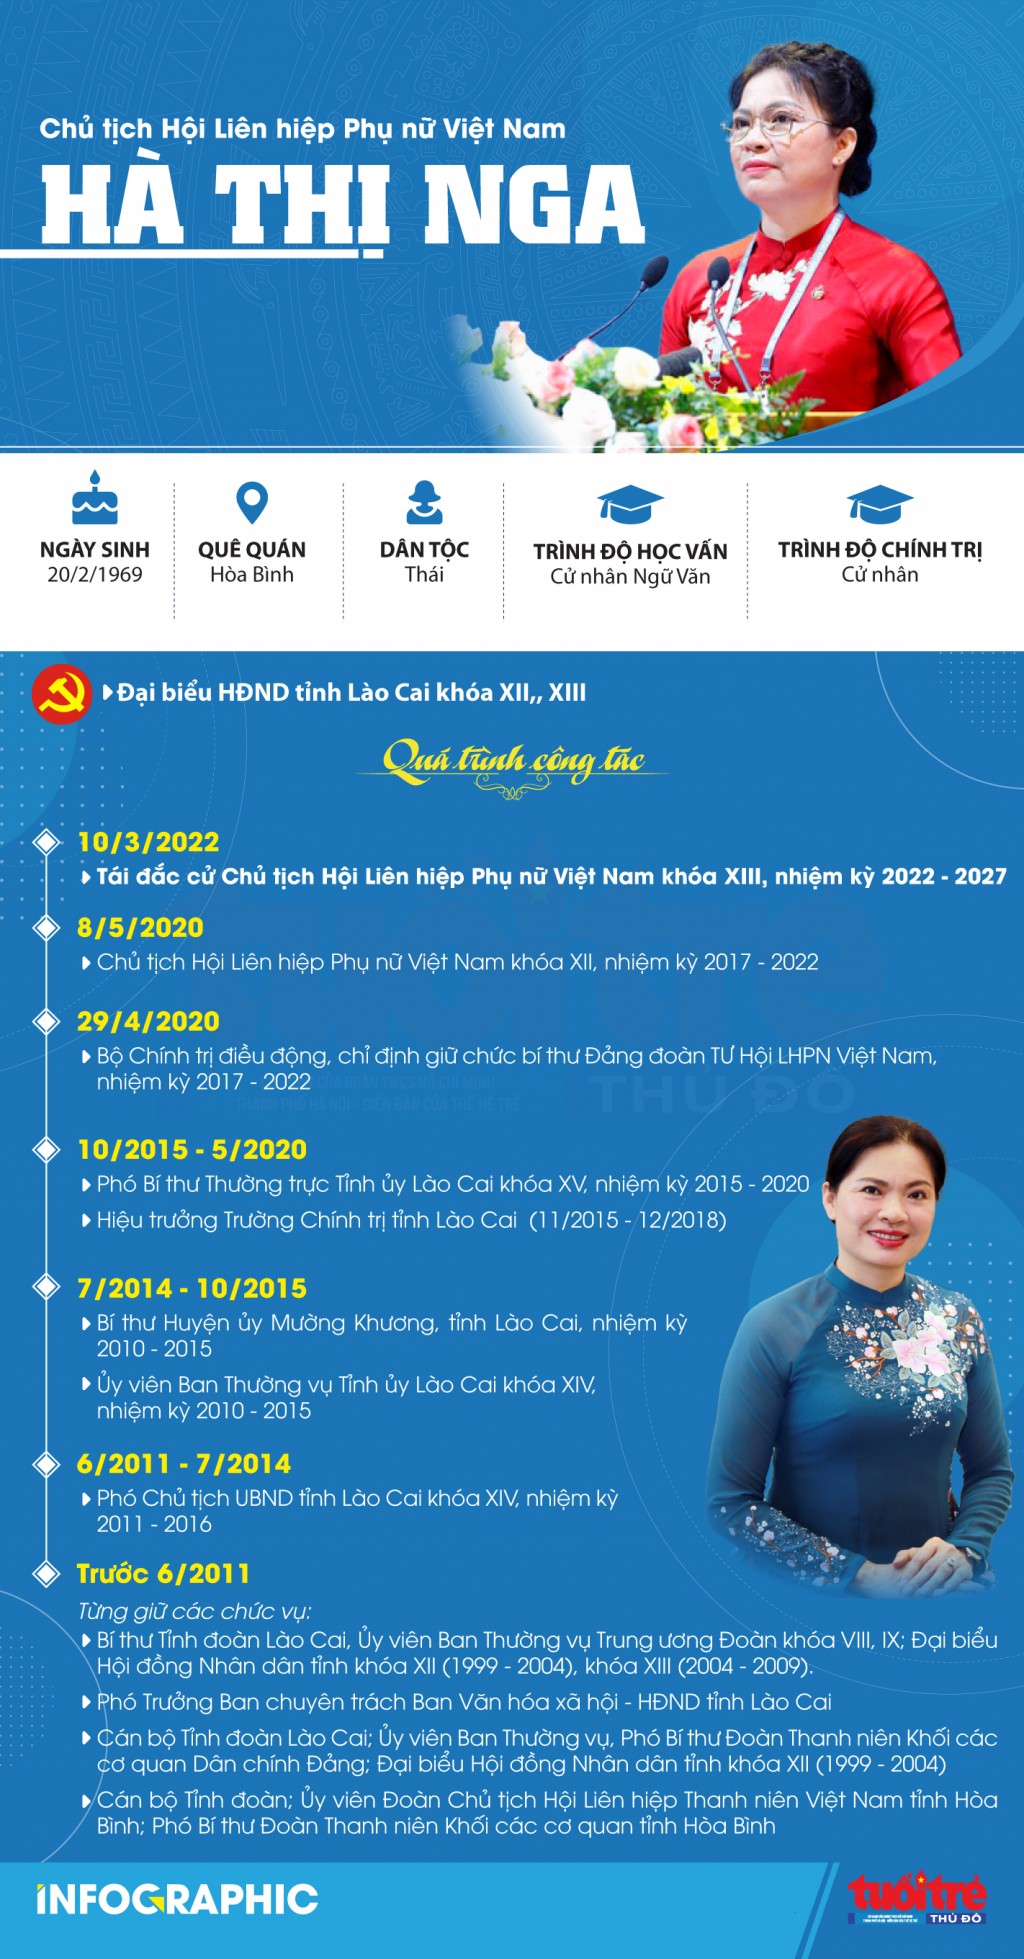 Đồng chí Hà Thị Nga tái đắc cử Chủ tịch Hội Liên hiệp Phụ nữ Việt Nam khóa XIII